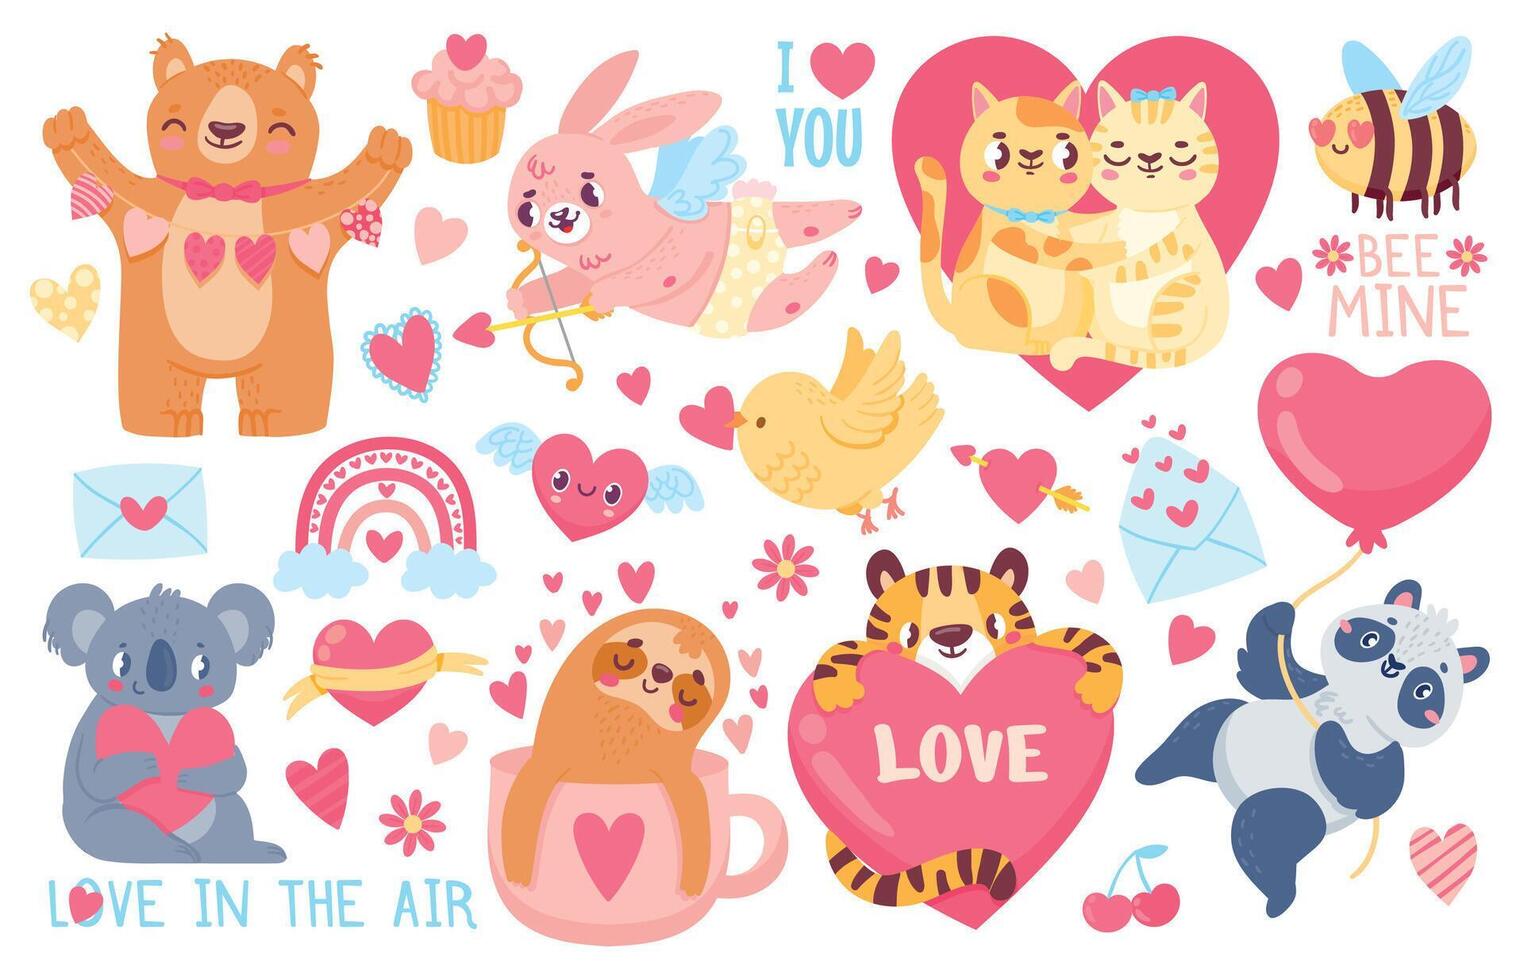 san valentin día animales Cupido conejito, mascota gatos amor Pareja abrazo, tigre, coala y panda con corazones. contento san valentin linda pegatina vector conjunto